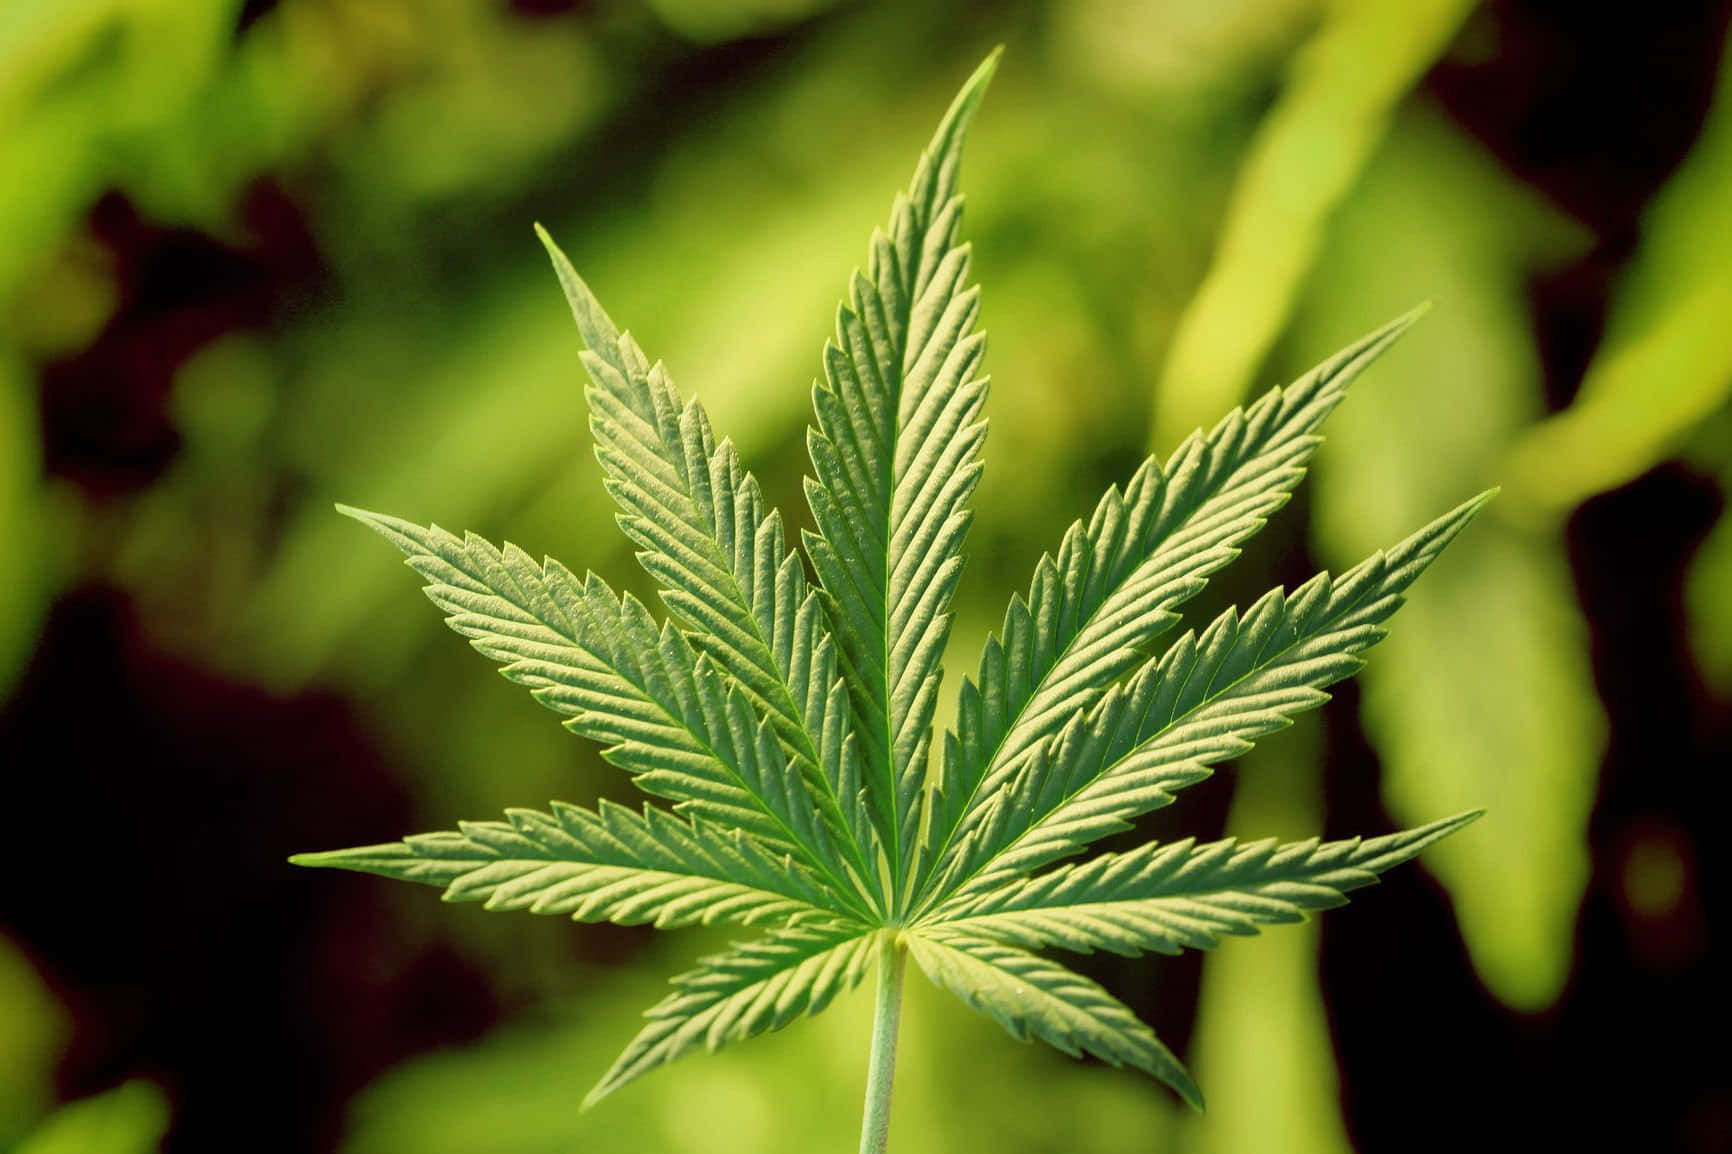 Stupendosfondo Ispirato Al 420 Con Foglie Di Cannabis In Armonia Con La Natura.